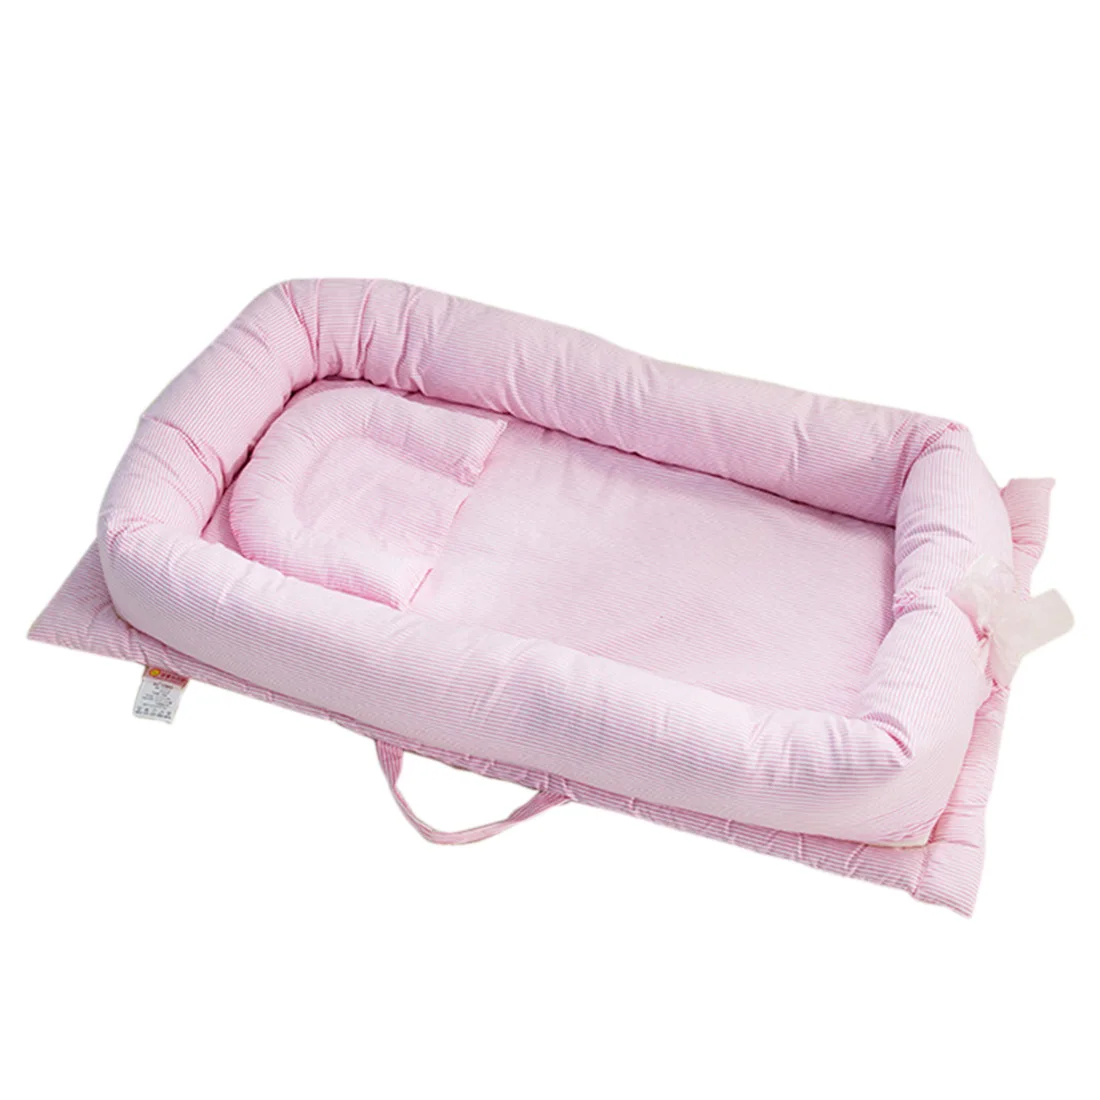 Детская кроватка портативная люлька детская дорожная Складная бионическая кровать Младенческая лежак детское тканевое гнездо сумка для